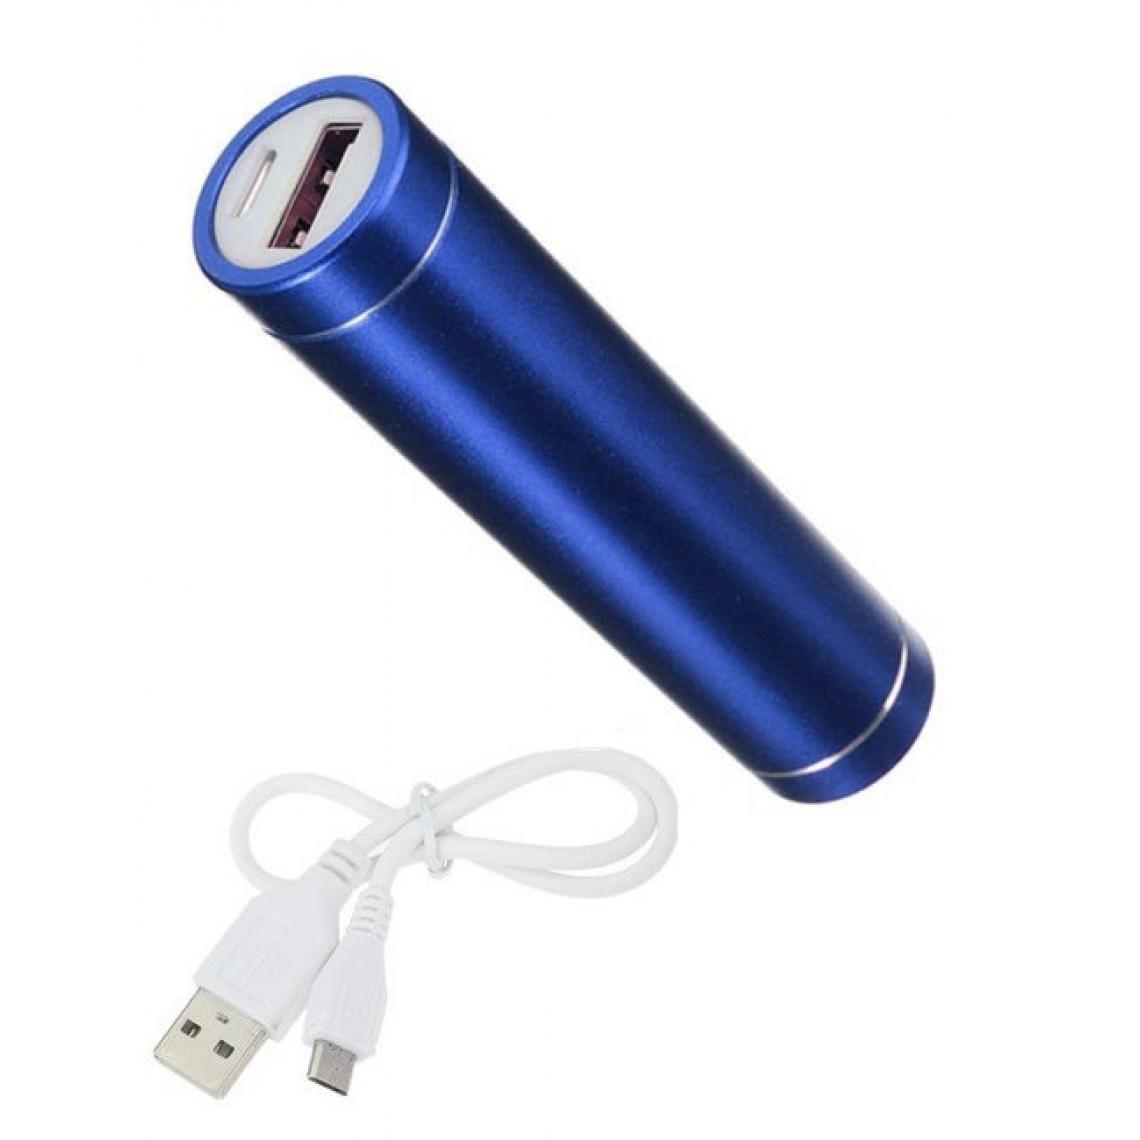 Shot - Batterie Chargeur Externe pour XIAOMI Redmi Note 6 Power Bank 2600mAh avec Cable USB/Mirco USB Secours Telephon (BLEU) - Chargeur secteur téléphone